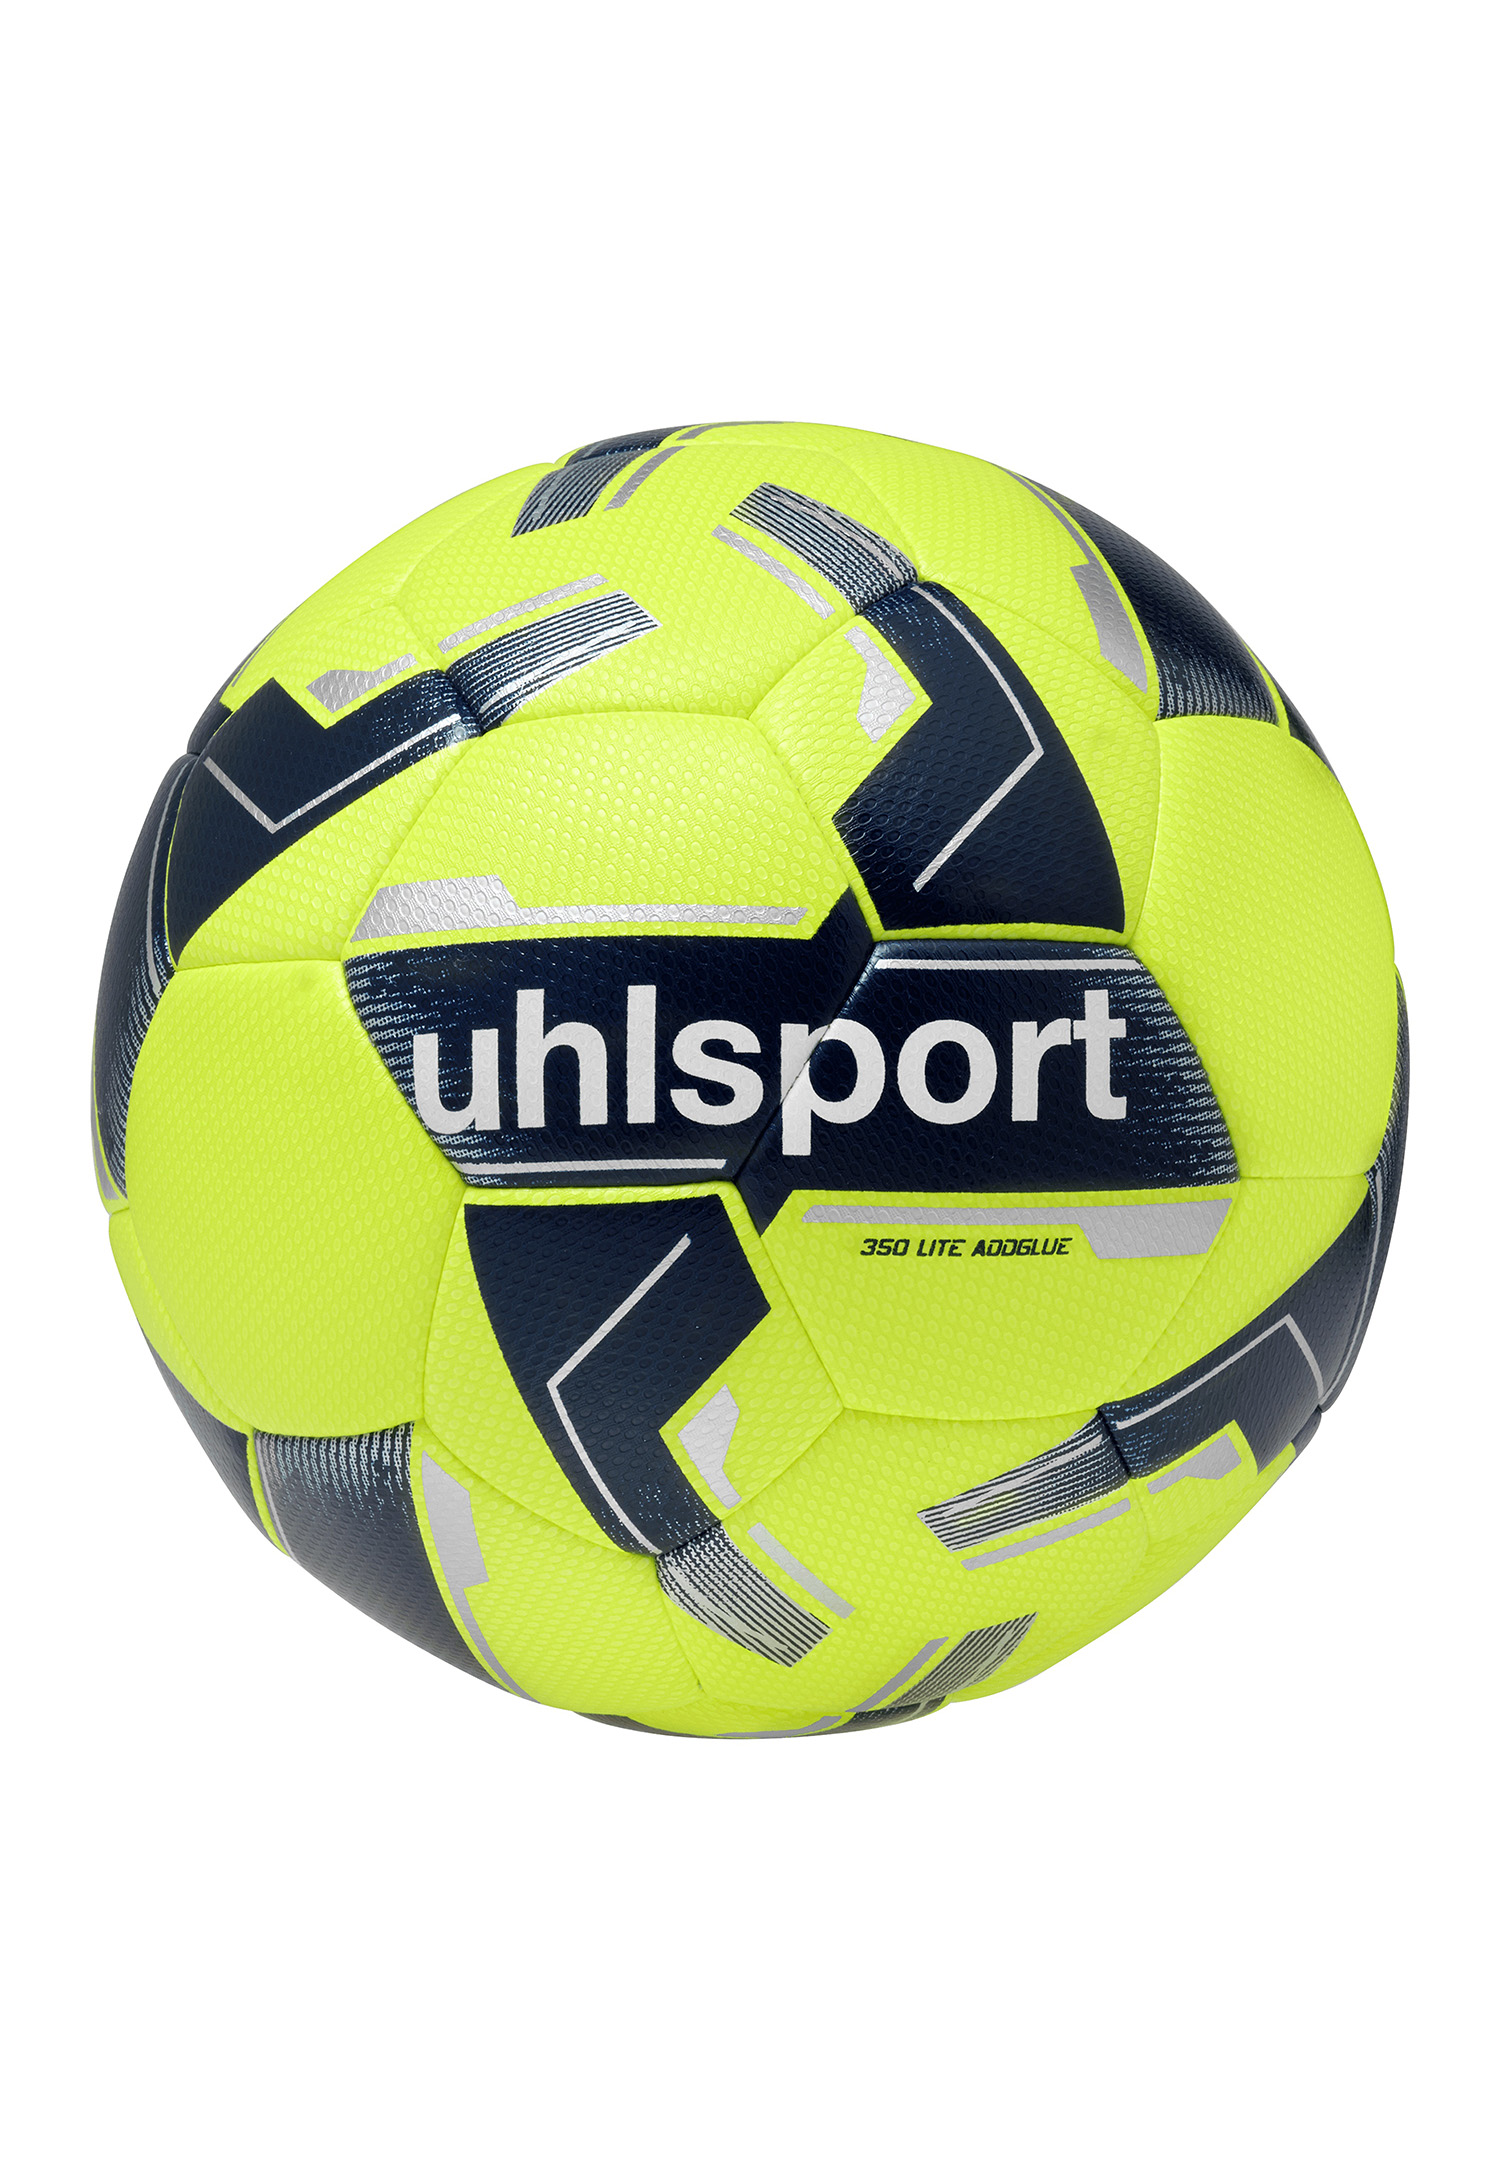 Uhlsport 350 LITE MATCH ADDGLUE Fussball Spiel- und Training Ball 100175801 Gr. 4